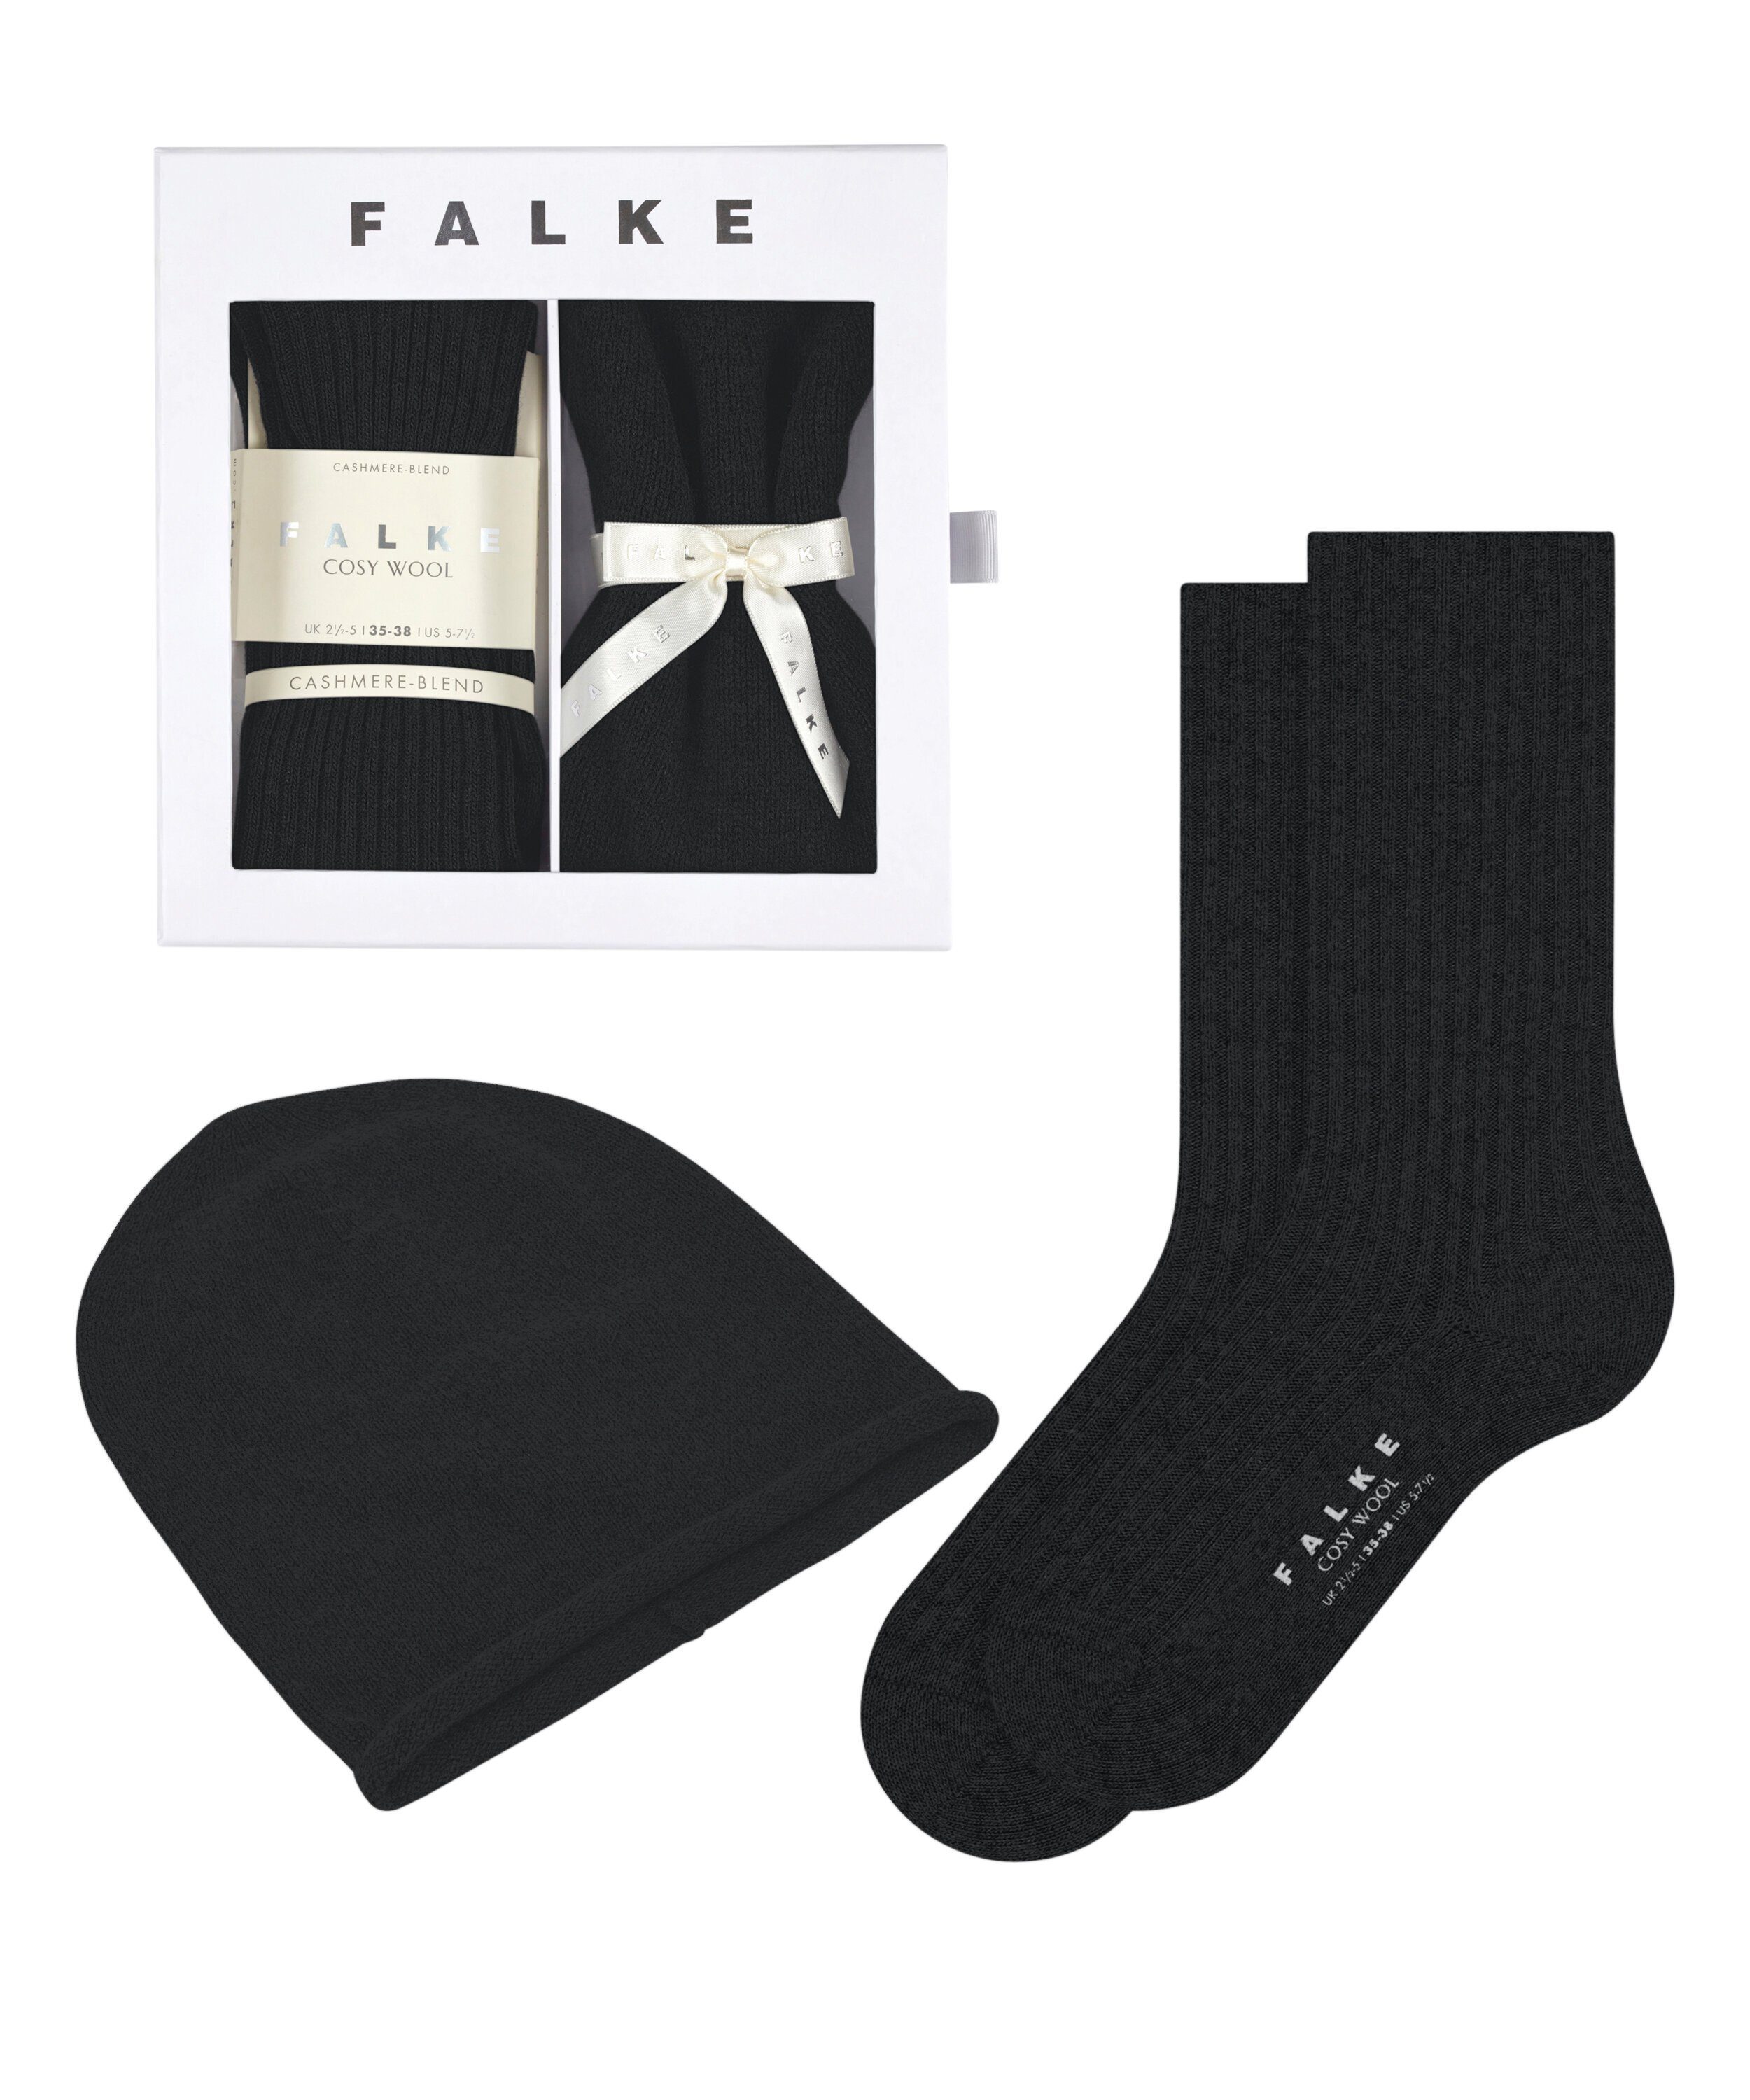 FALKE Socken Cosy Cashmere Giftset (1-Paar)